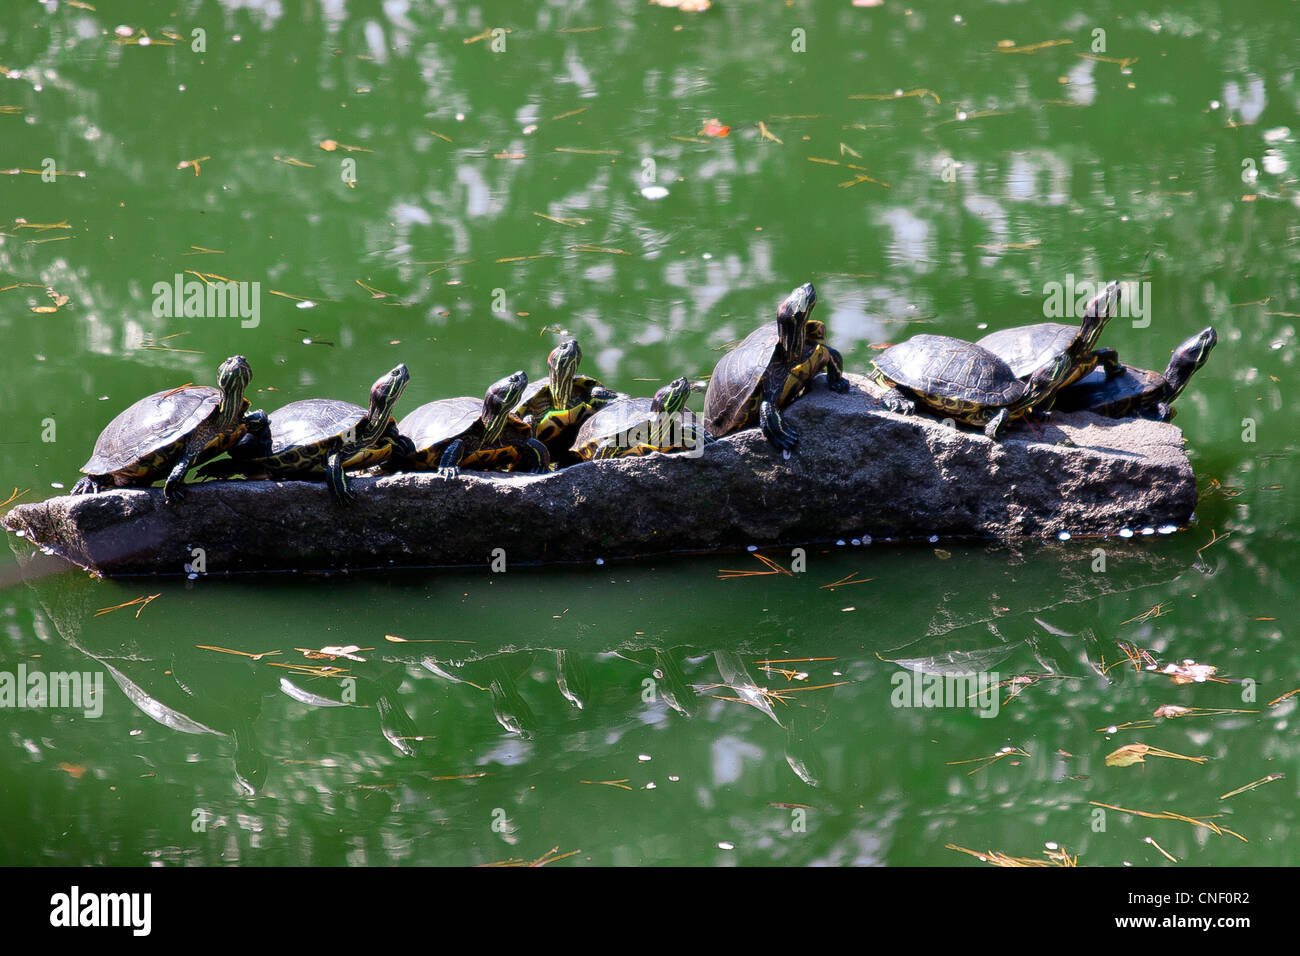 Schildkröten sonnen sich auf einem Felsen inmitten eines grünen Teiches Stockfoto